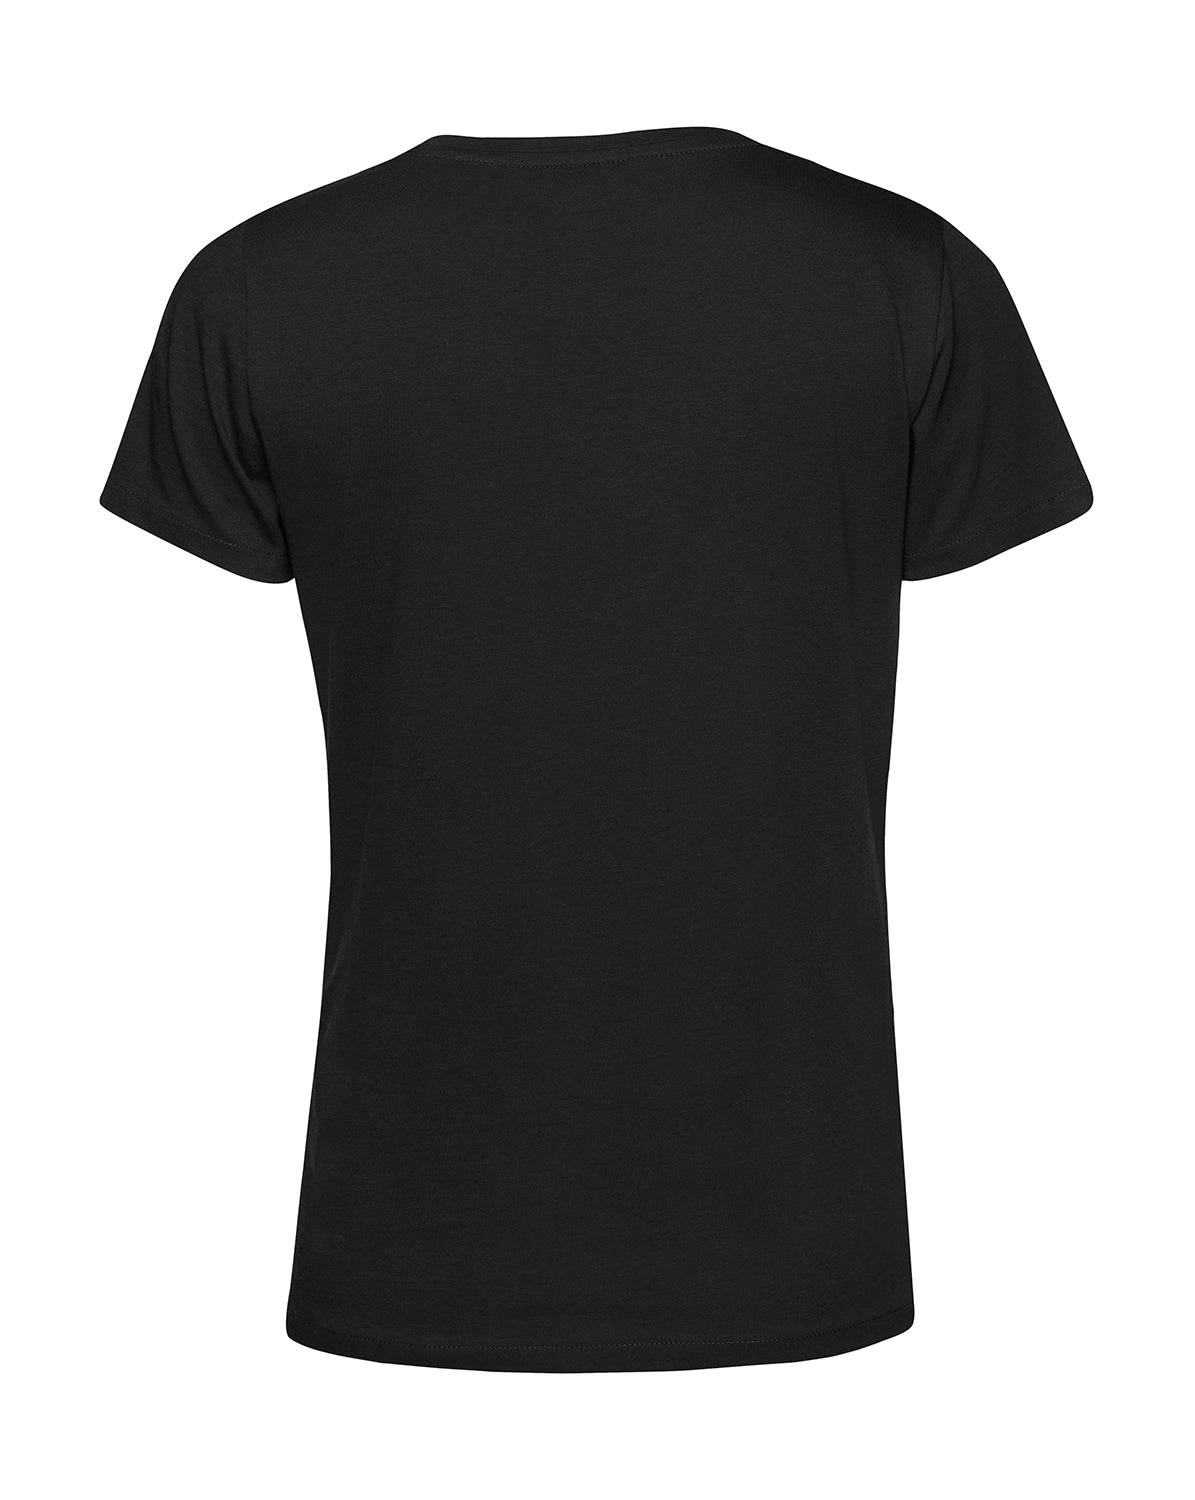 Frauen T-Shirt | BLING BLING | schwarz | Logo silber